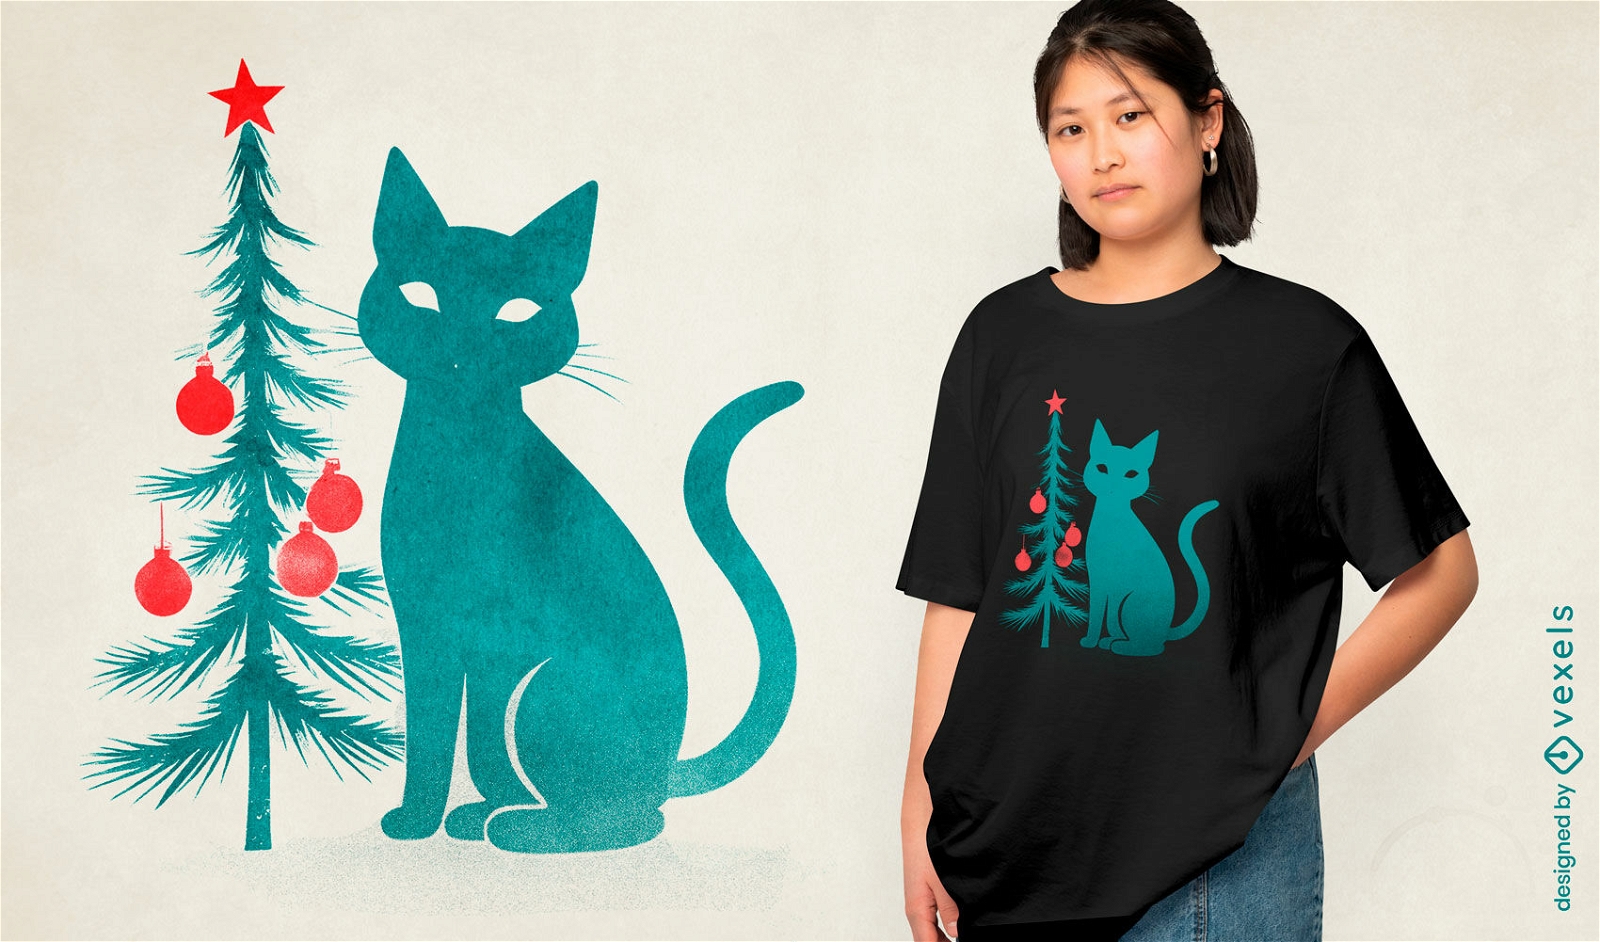 Dise?o de camiseta de silueta de gato navide?o.